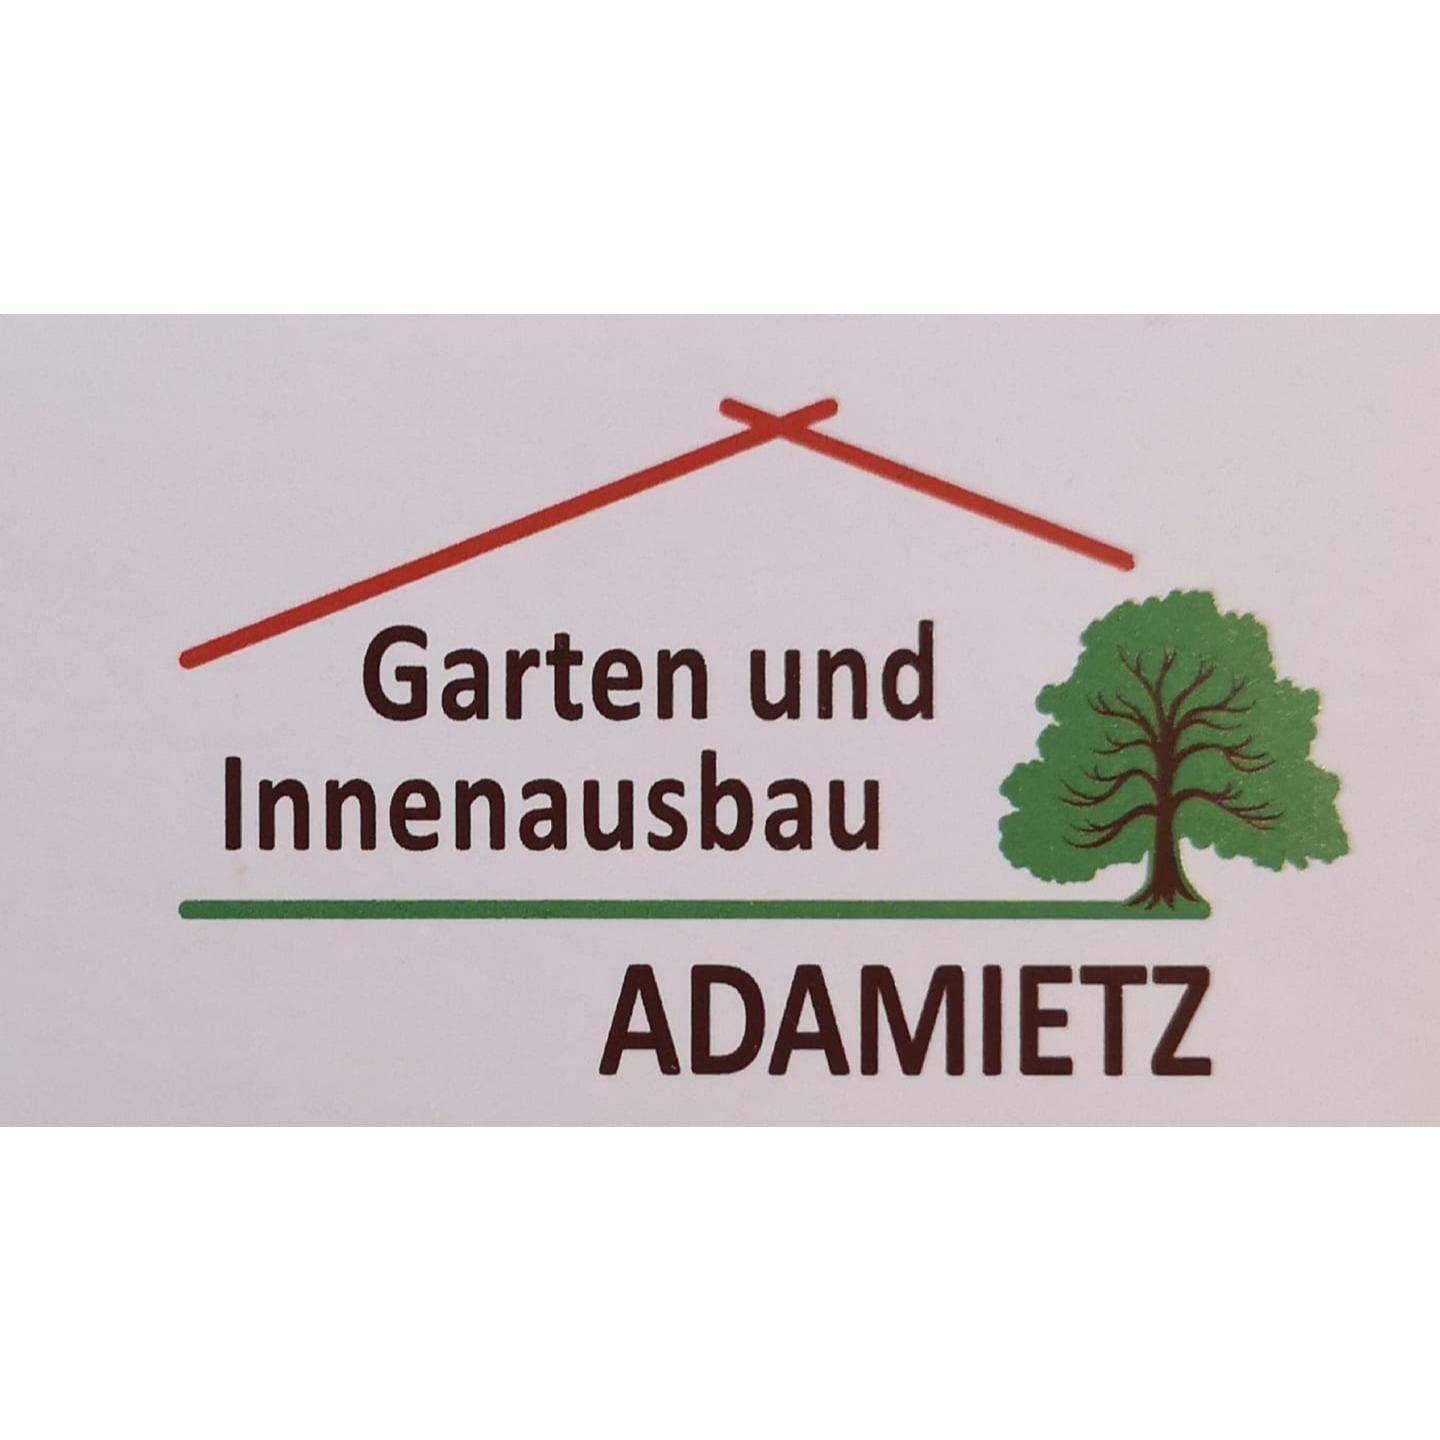 Garten und Innenausbau Adamietz Logo